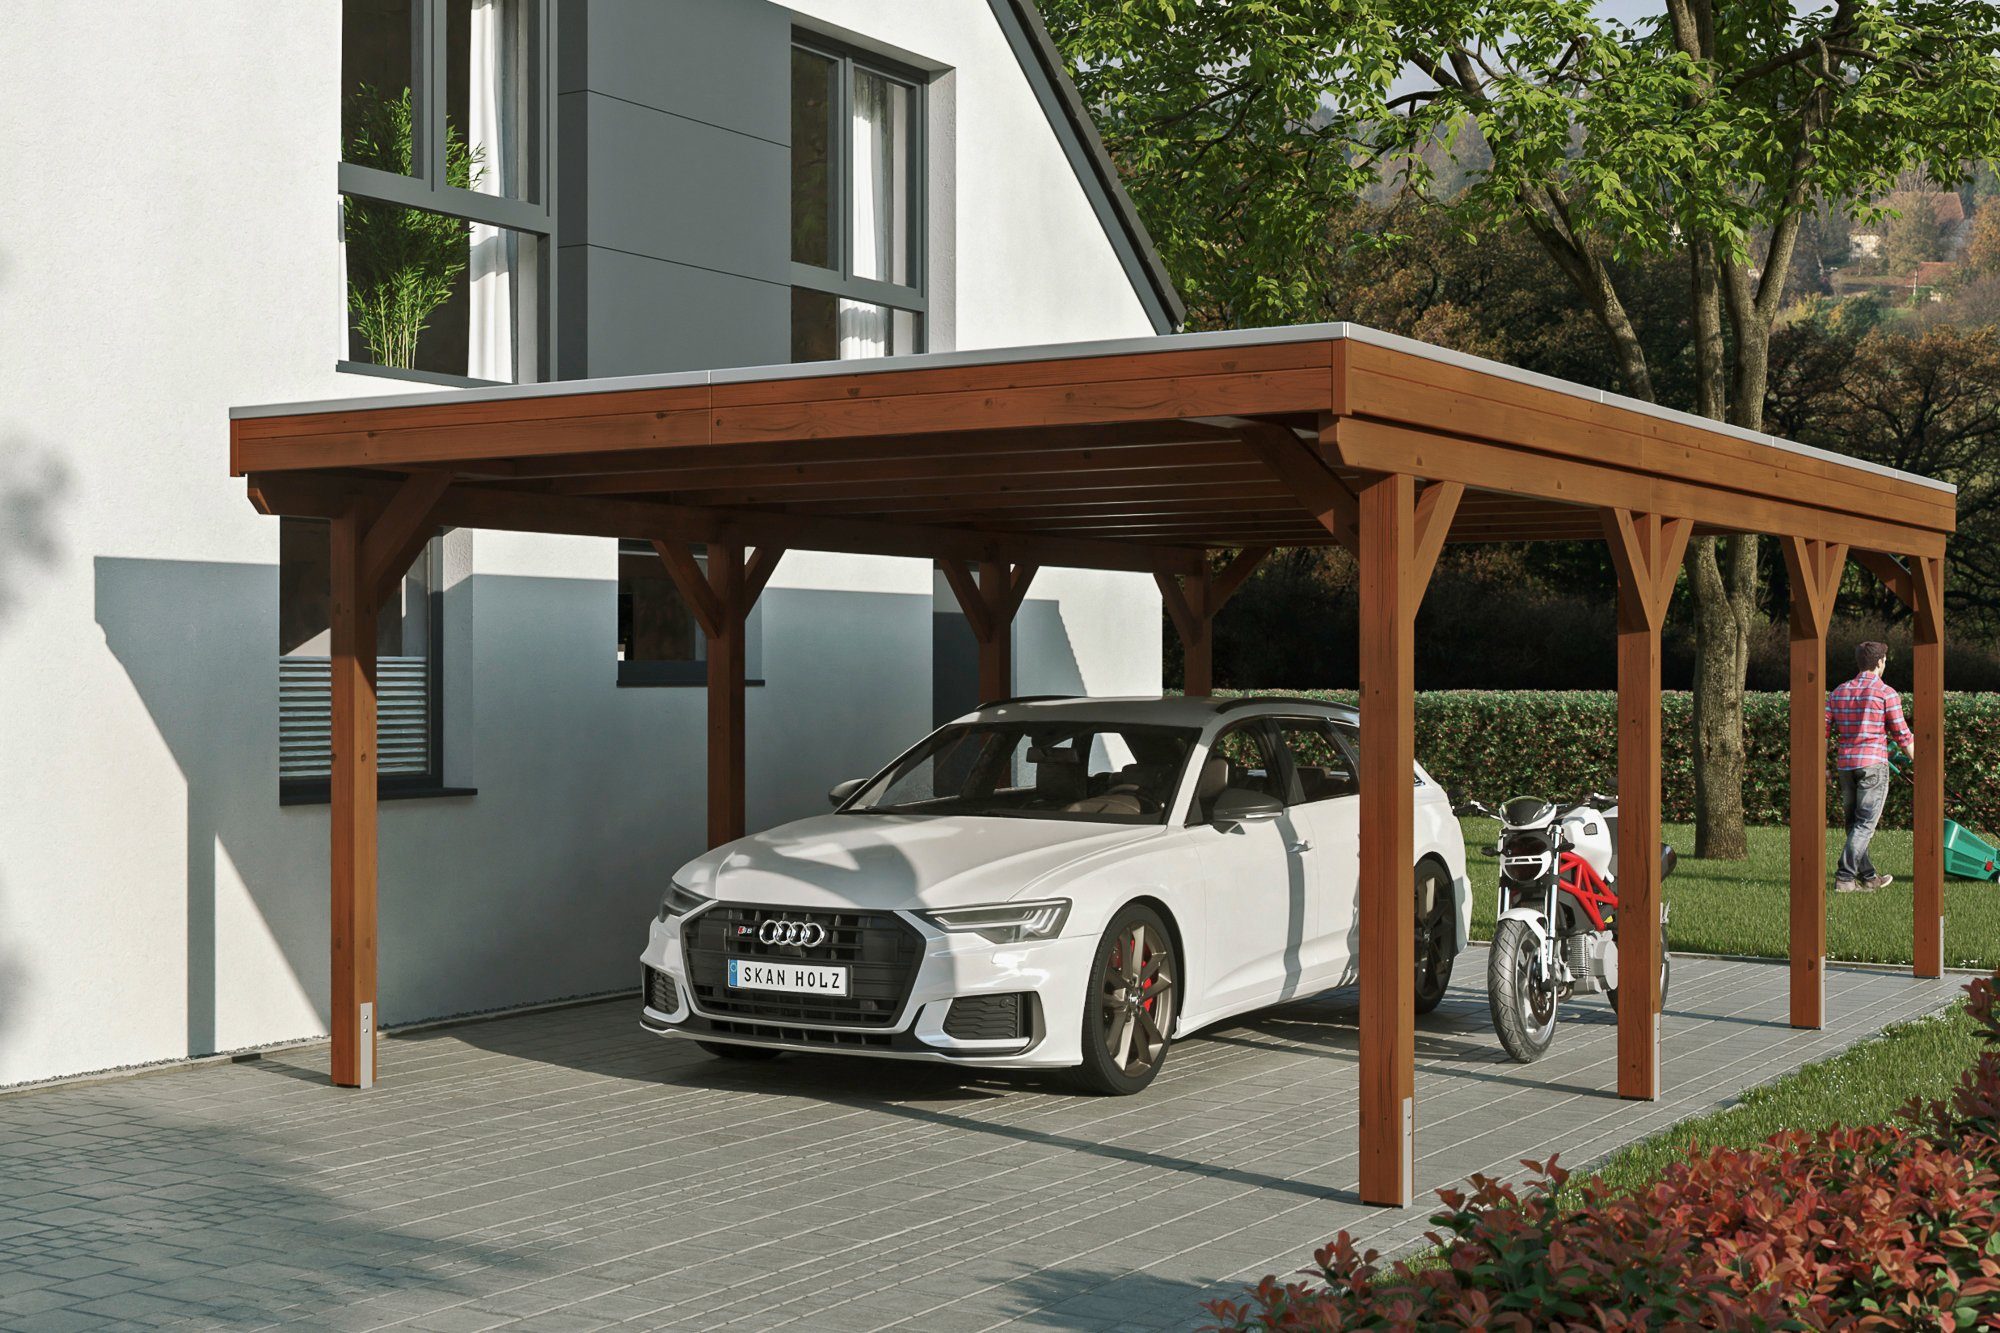 Skanholz Einzelcarport Aluminium-Dachplatten, behandelt in mit Aluminiumdach, 395 Einfahrtshöhe, cm, 427x796 BxT: Grunewald, nussbaum mit Flachdach farblich cm